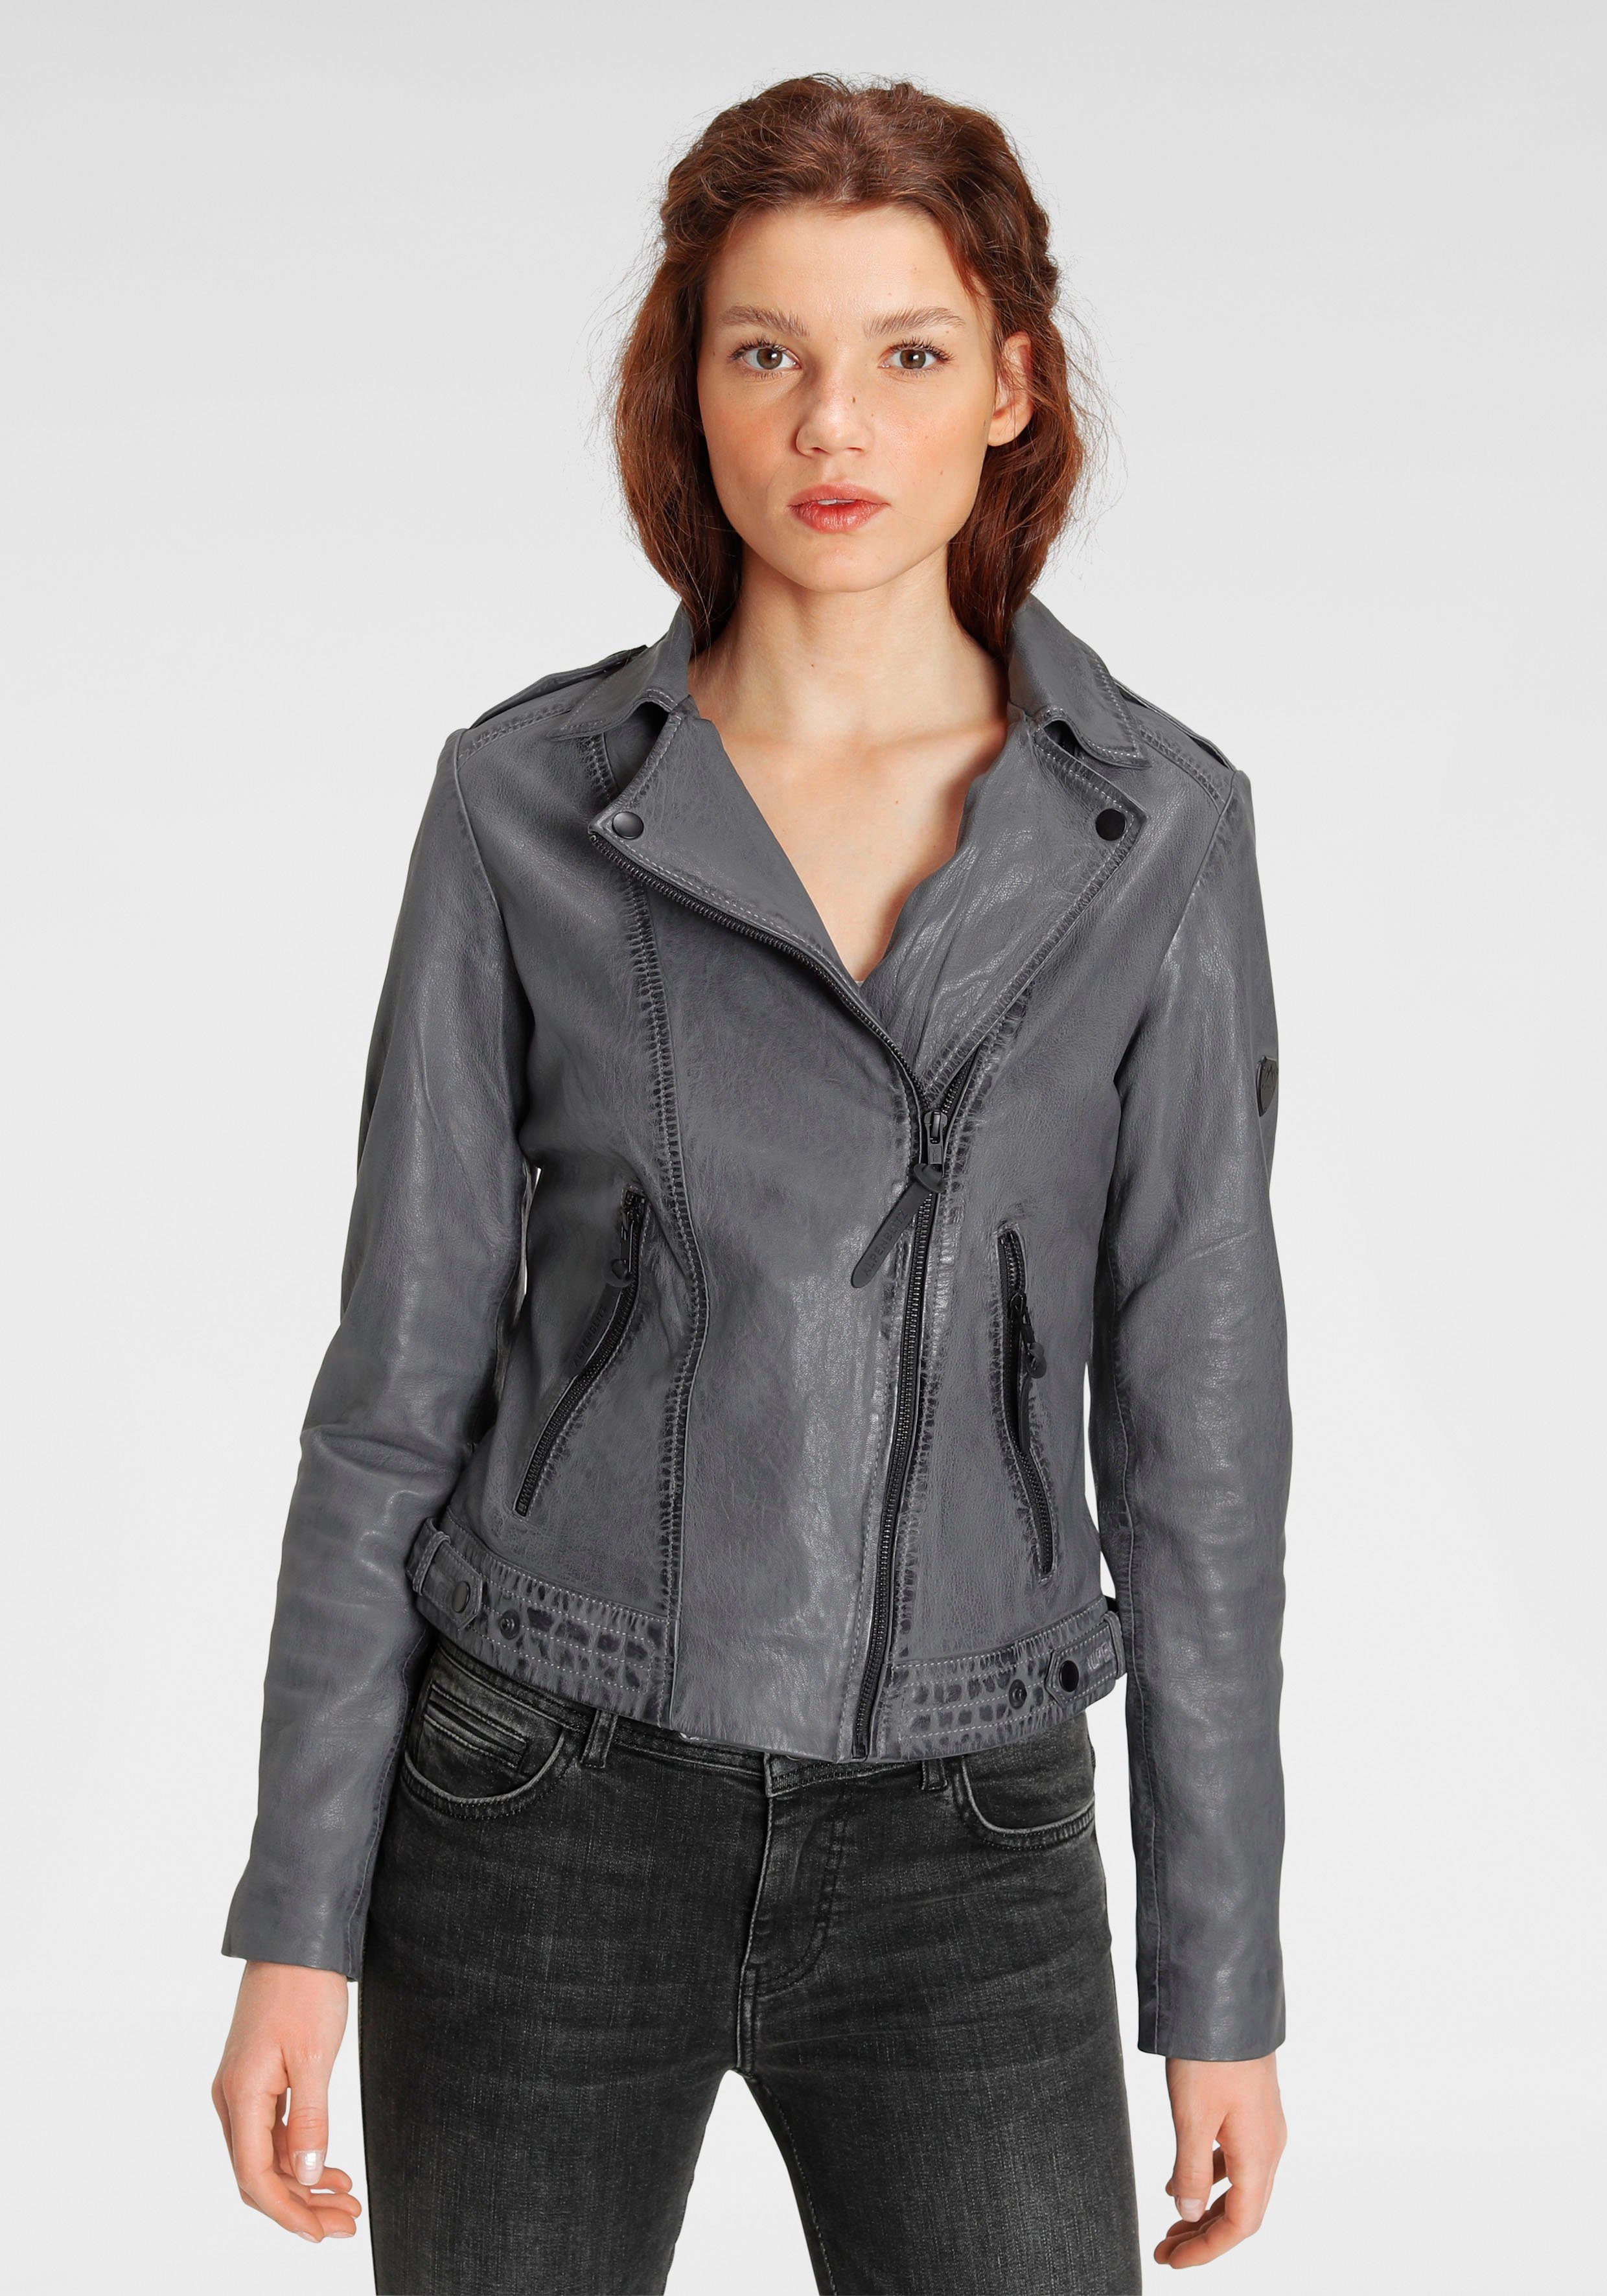 Damen Lederjacke in grau online kaufen | OTTO